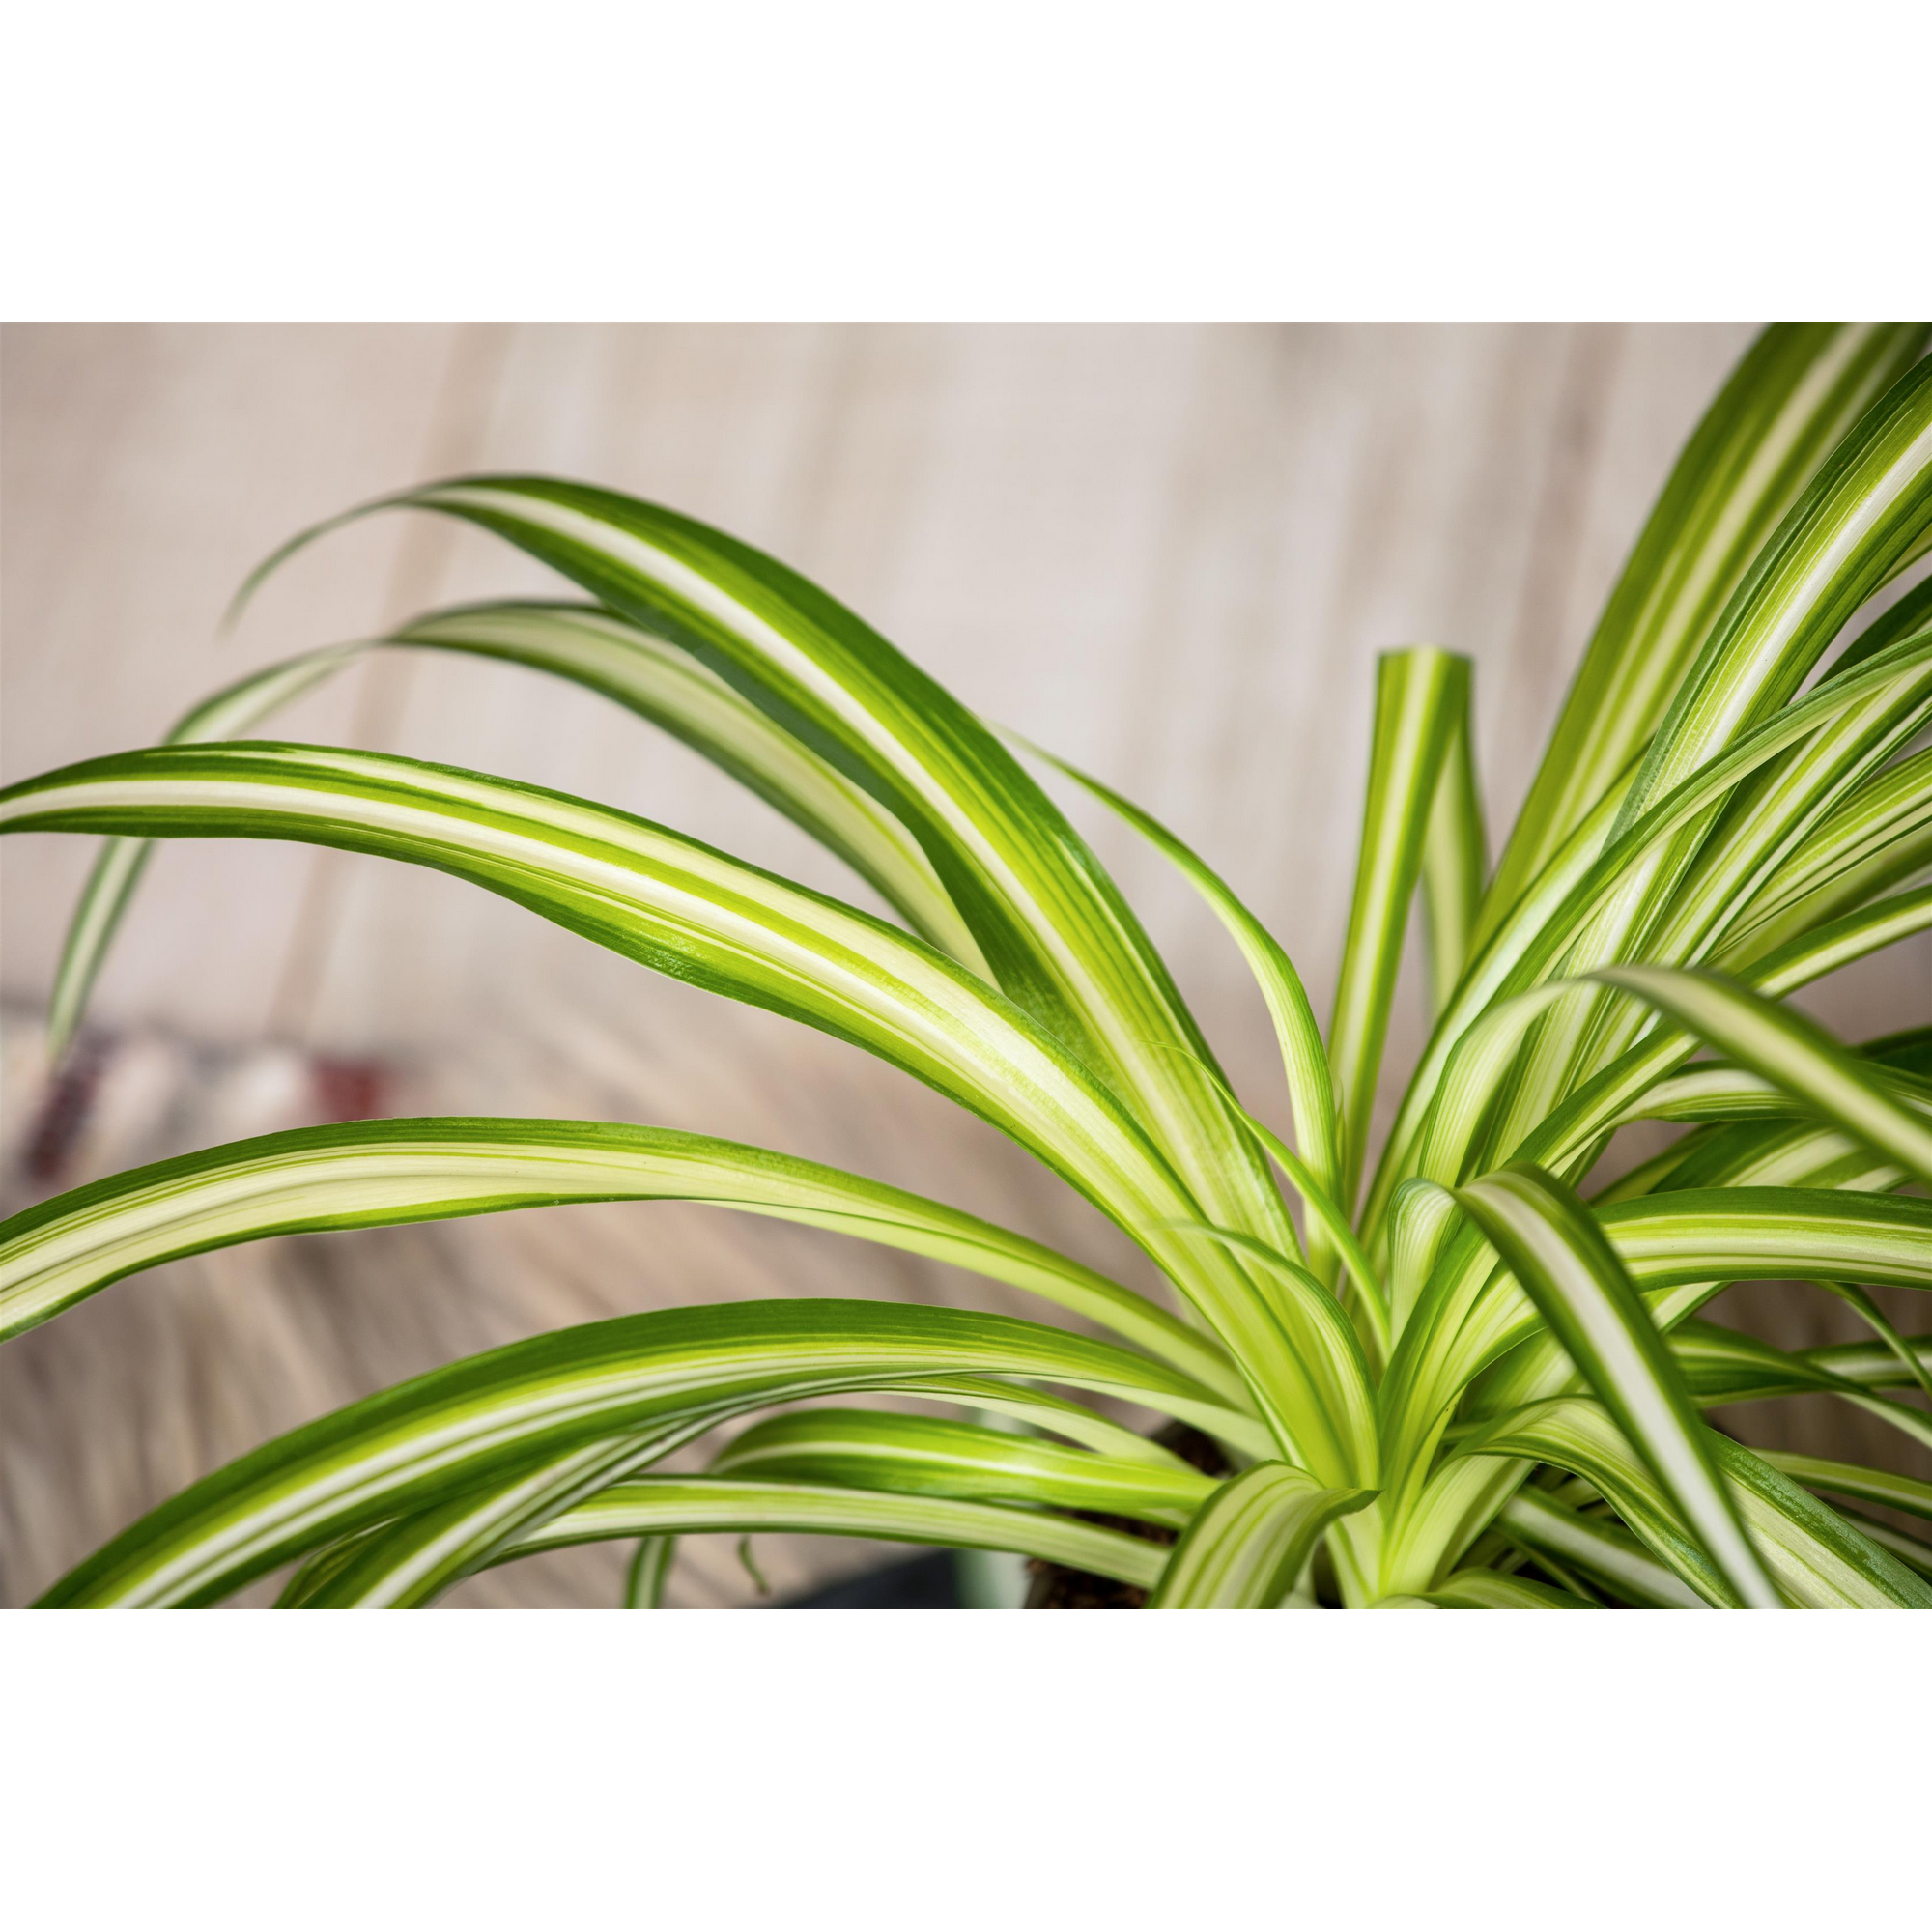 Tierfutterpflanze Grünlilie 'Variegatum' 12 cm Topf + product picture